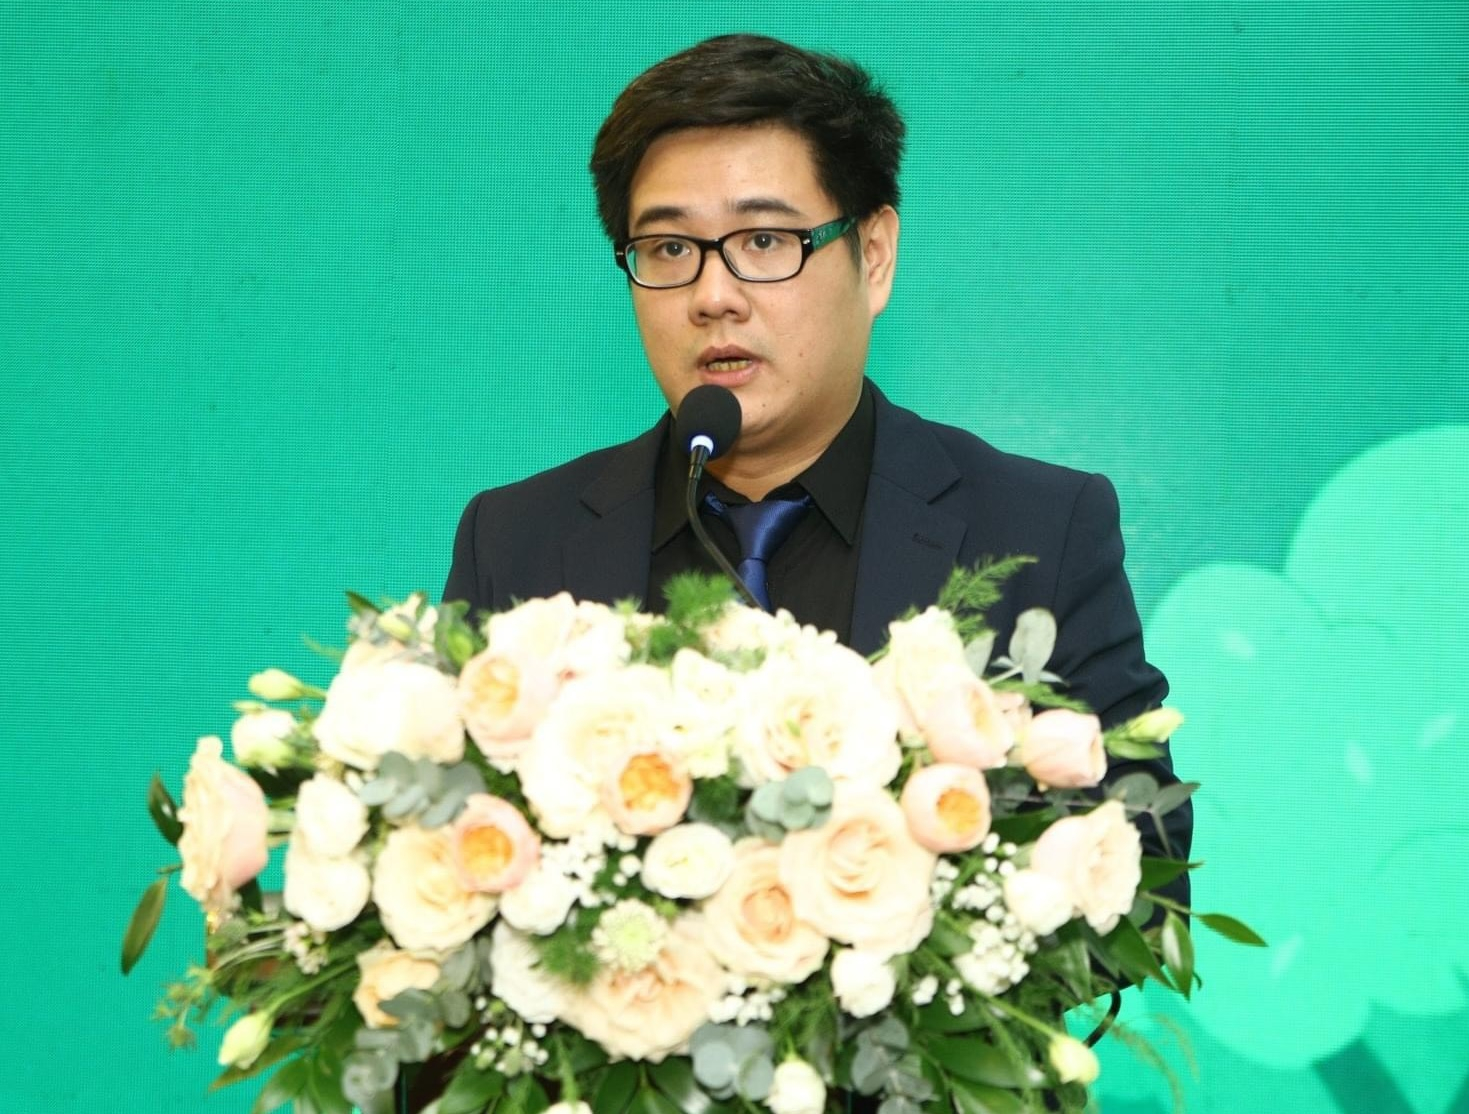 Ông Nguyễn Võ Trường An - Phó Tổng Giám đốc Công ty CP Sàn giao dịch tín chỉ carbon ASEAN